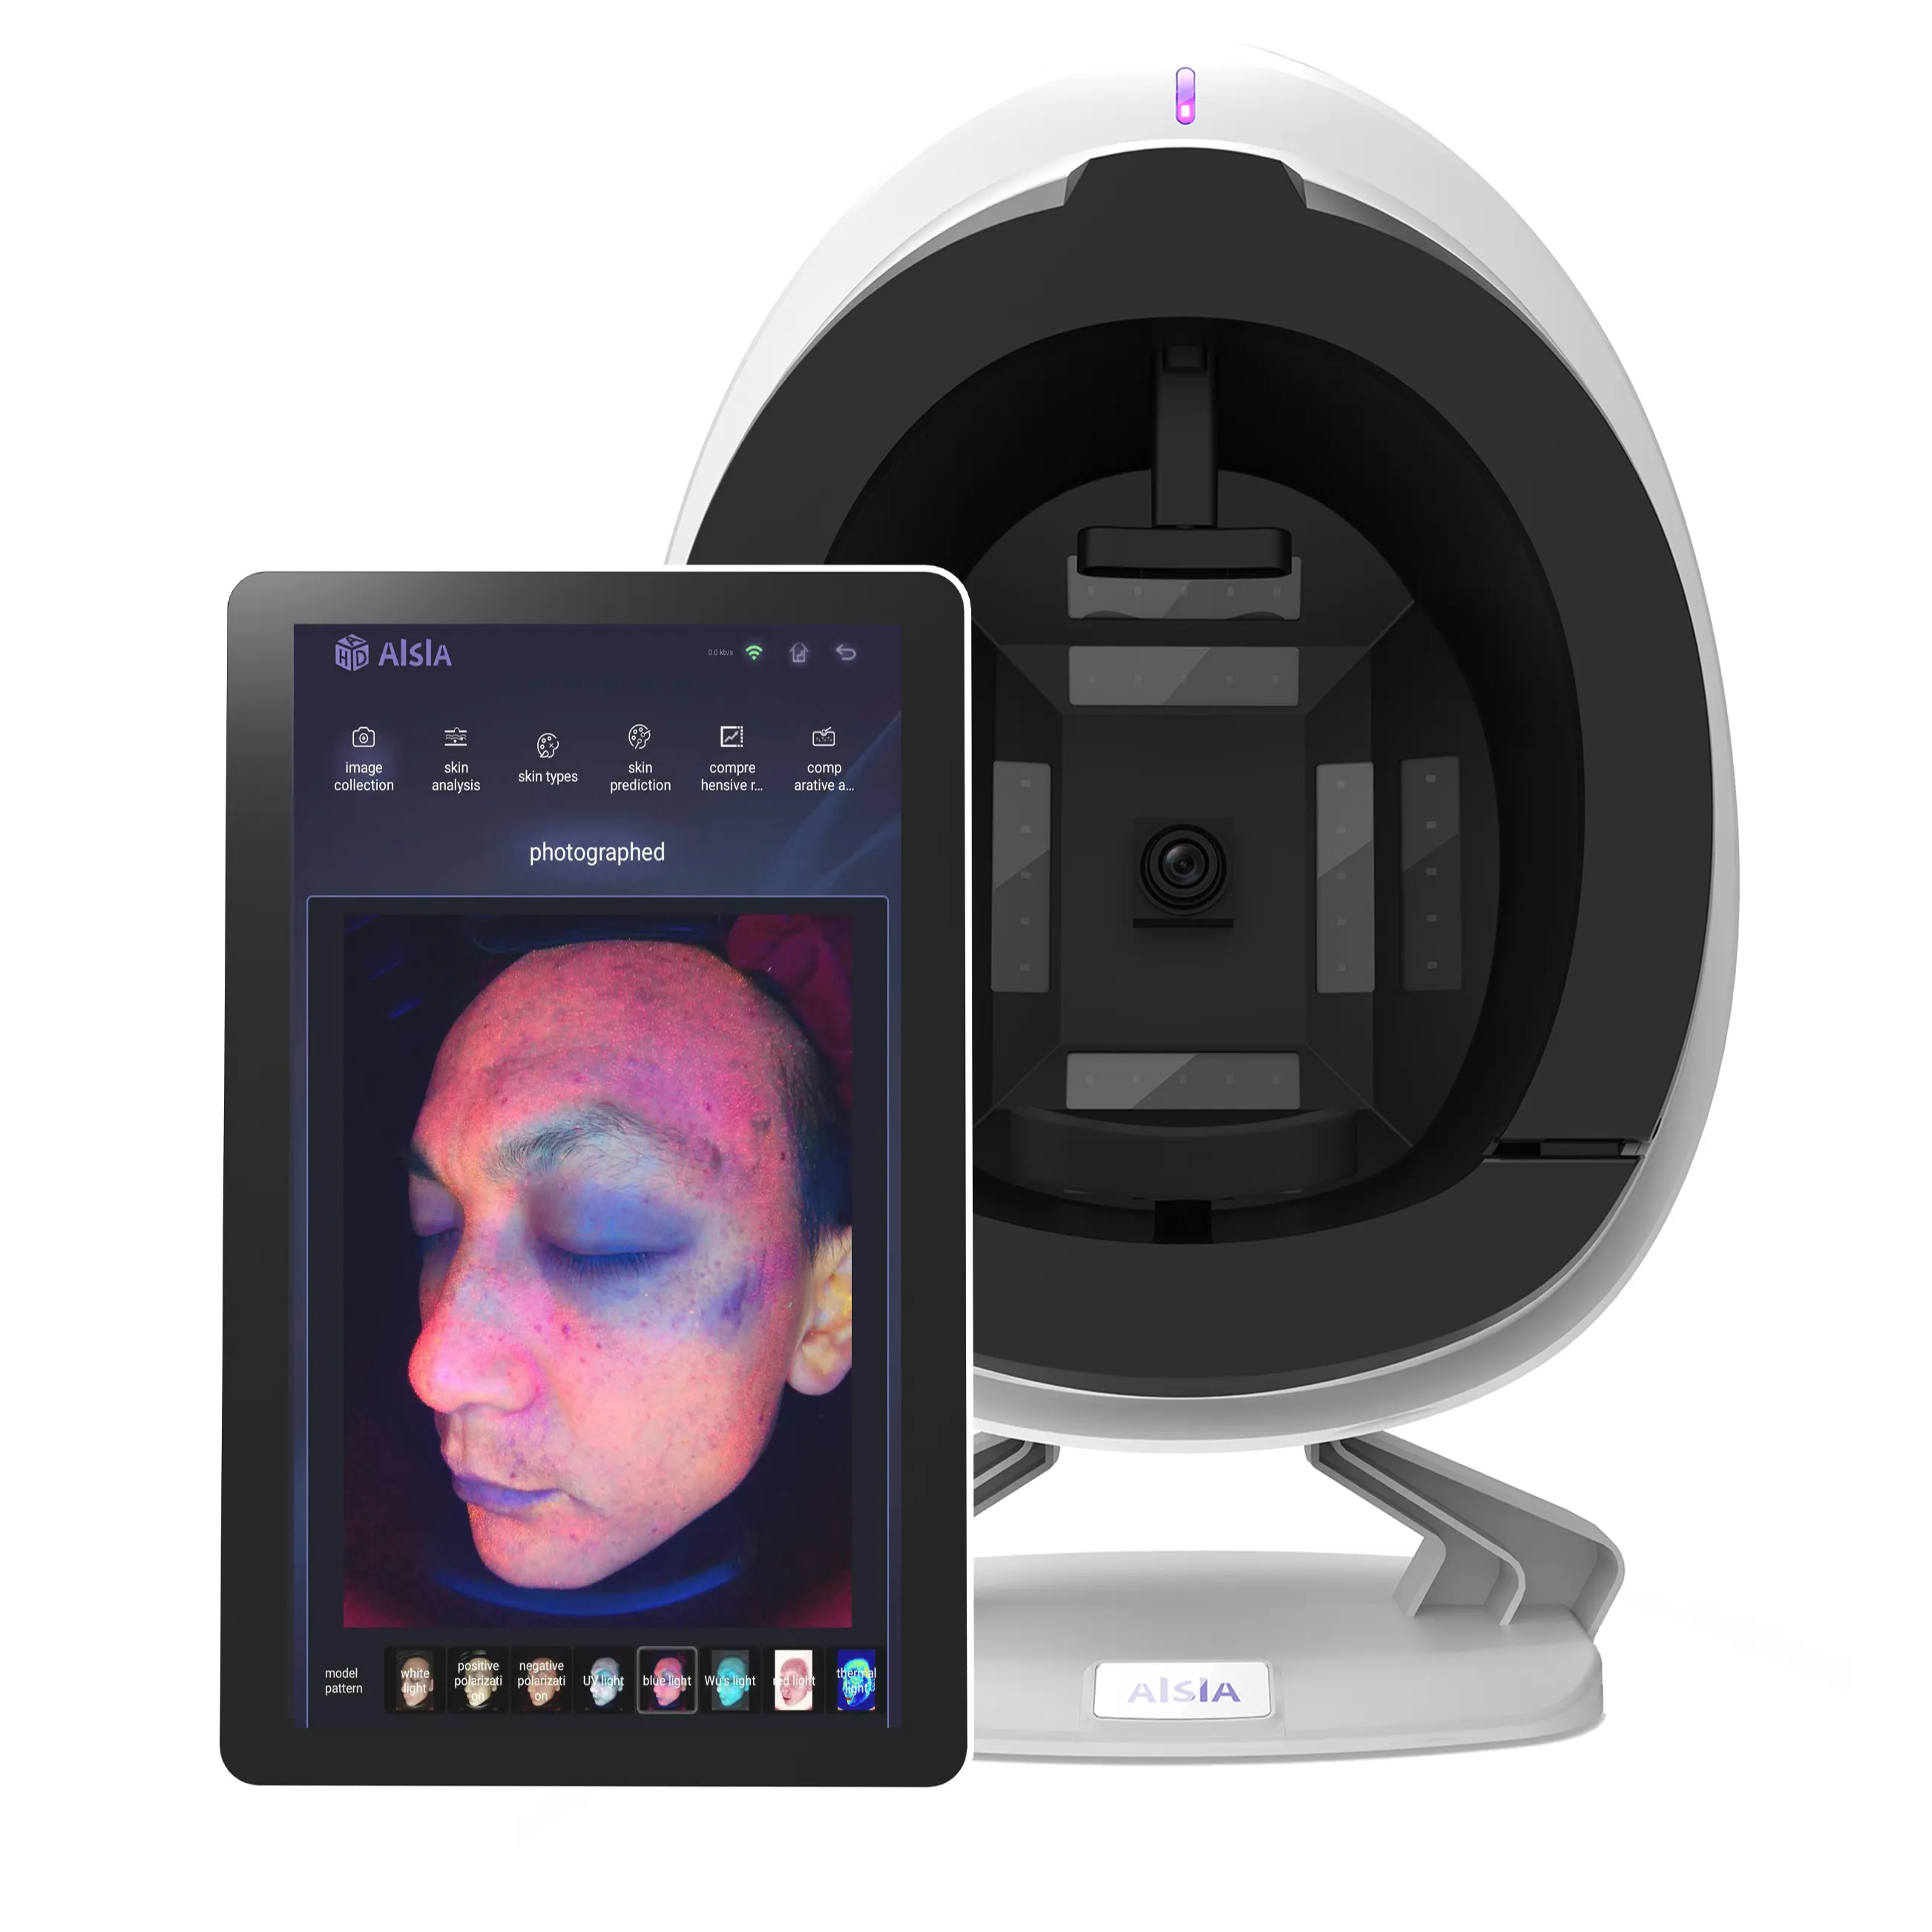 Nuovo sistema Scanner portatile per la pelle 3D rileva i problemi che offrono suggerimenti analizzatore della pelle del viso per negozi di bellezza